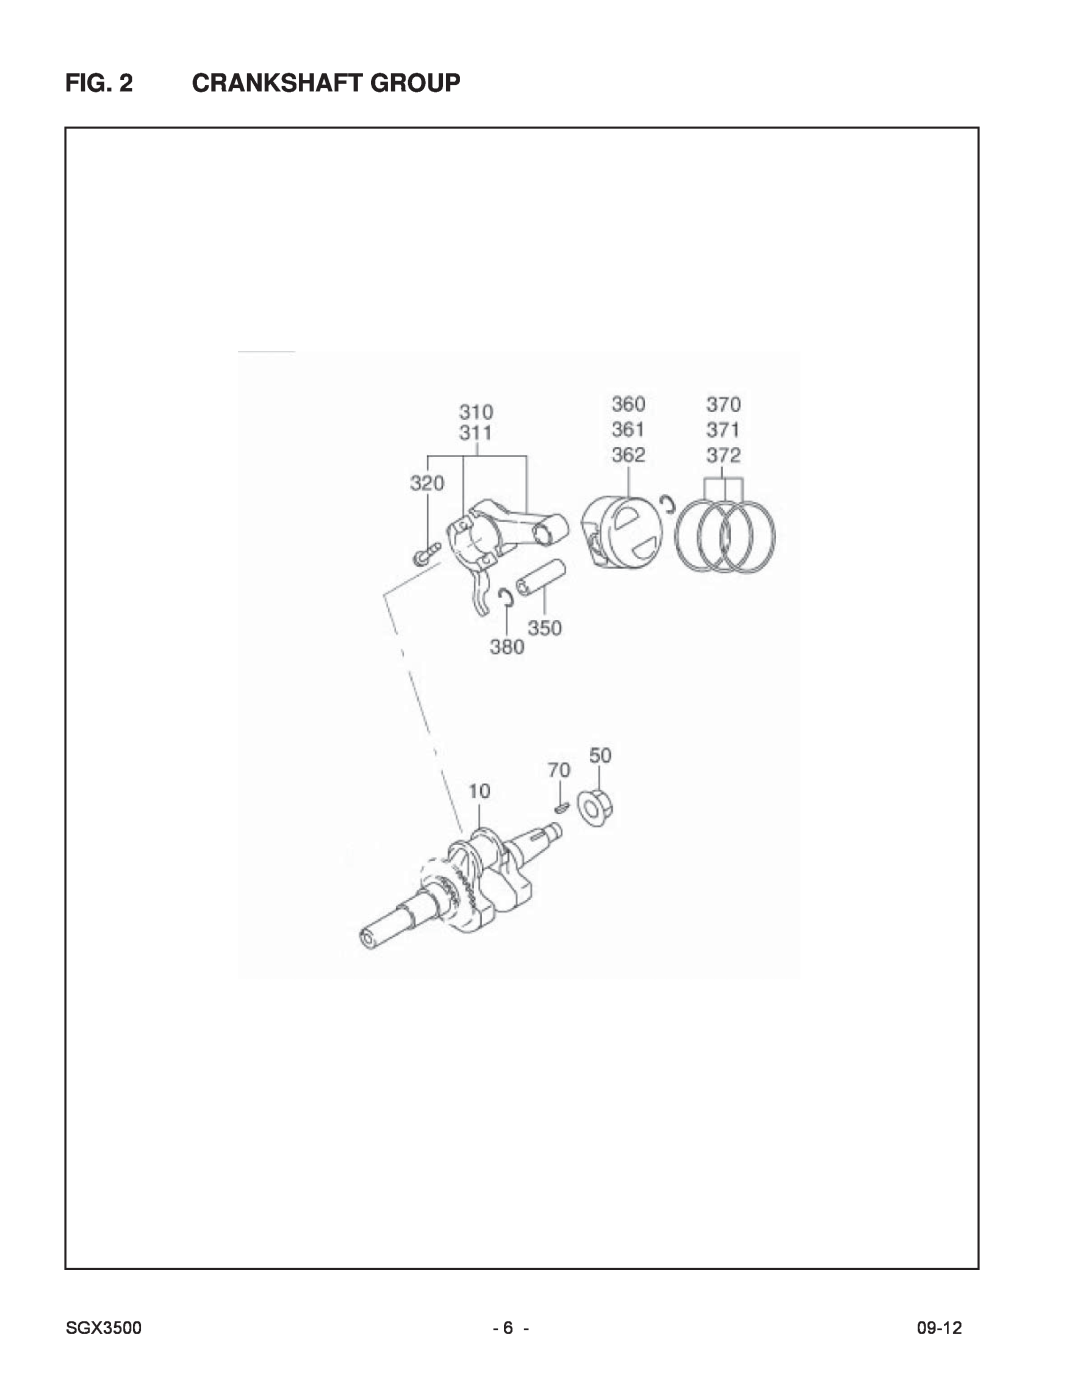 Subaru SGX3500 manual Crankshaft Group, 09-12 